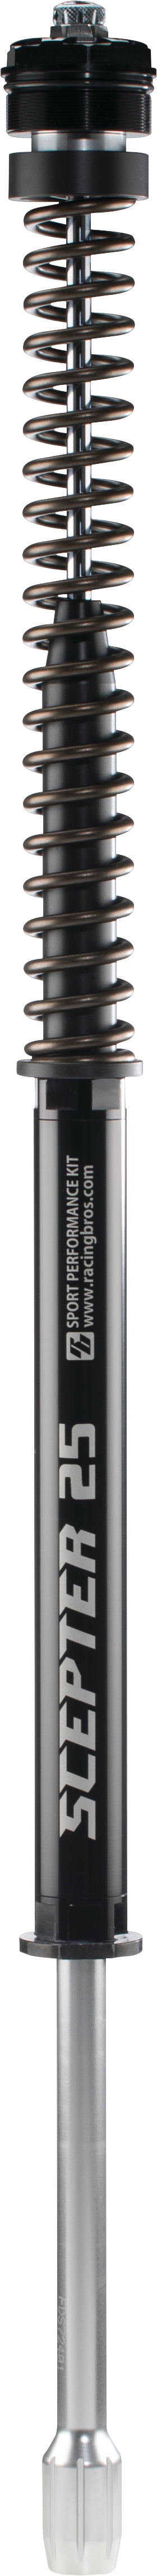 Scepter Fork Kit Hvy 49mm Fxd/Fxdl/Fxdb 06 17